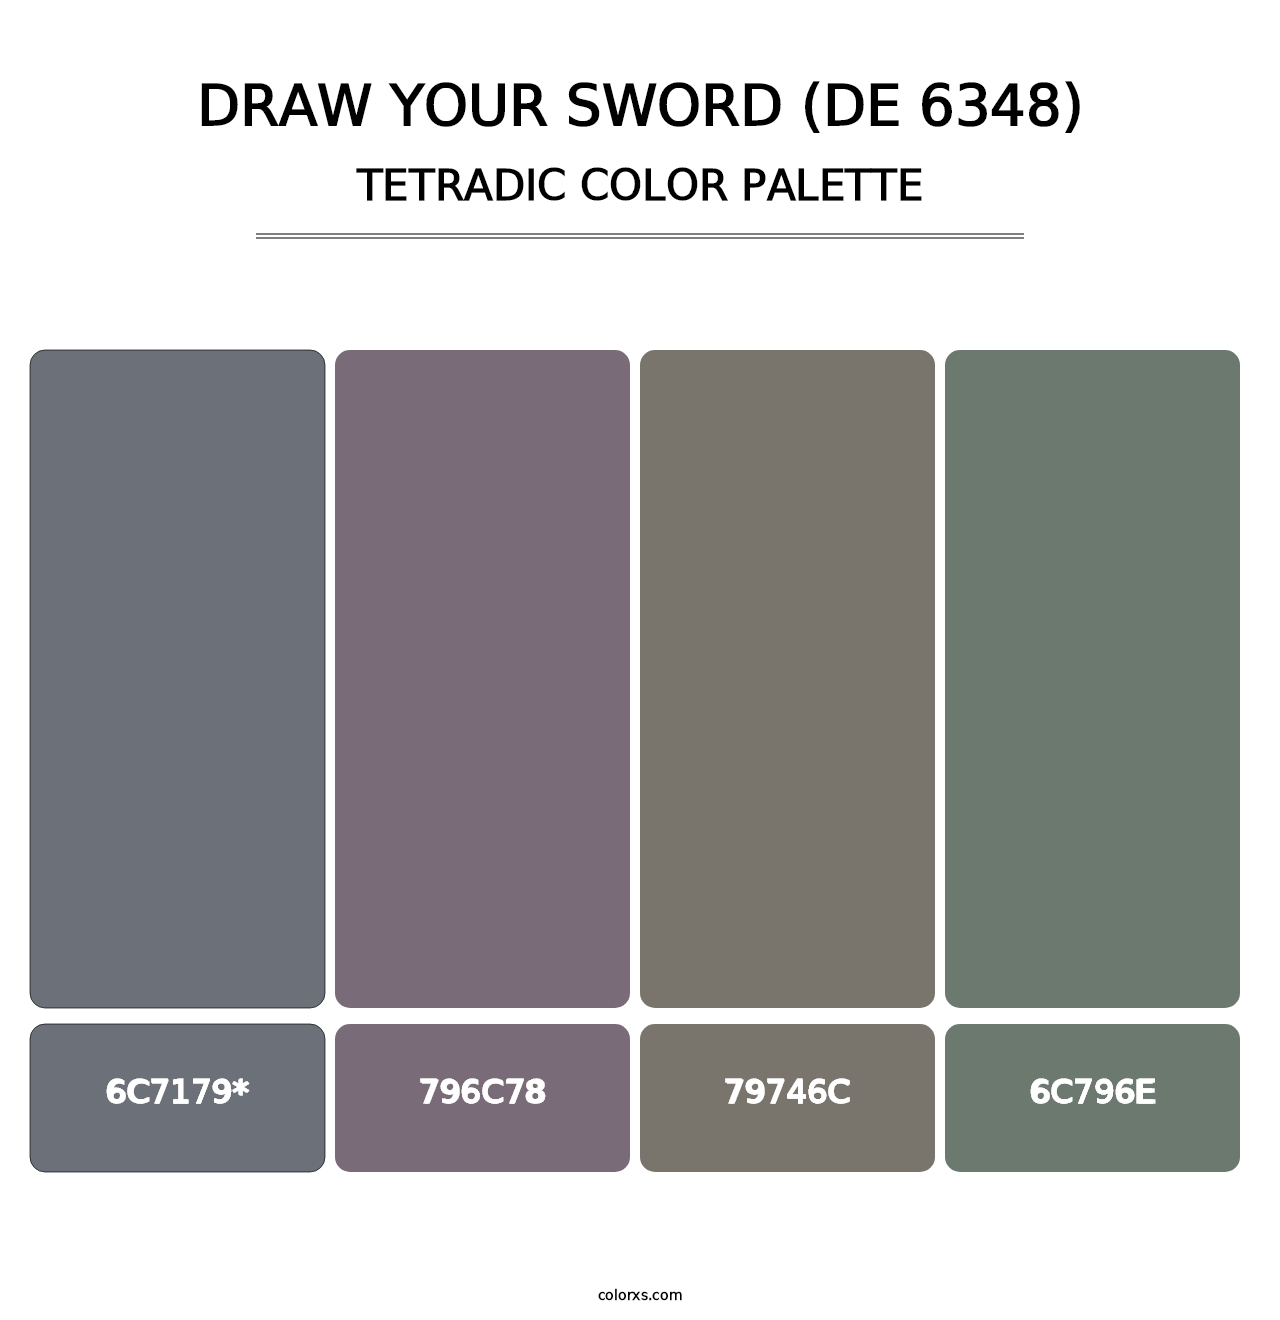 Draw Your Sword (DE 6348) - Tetradic Color Palette